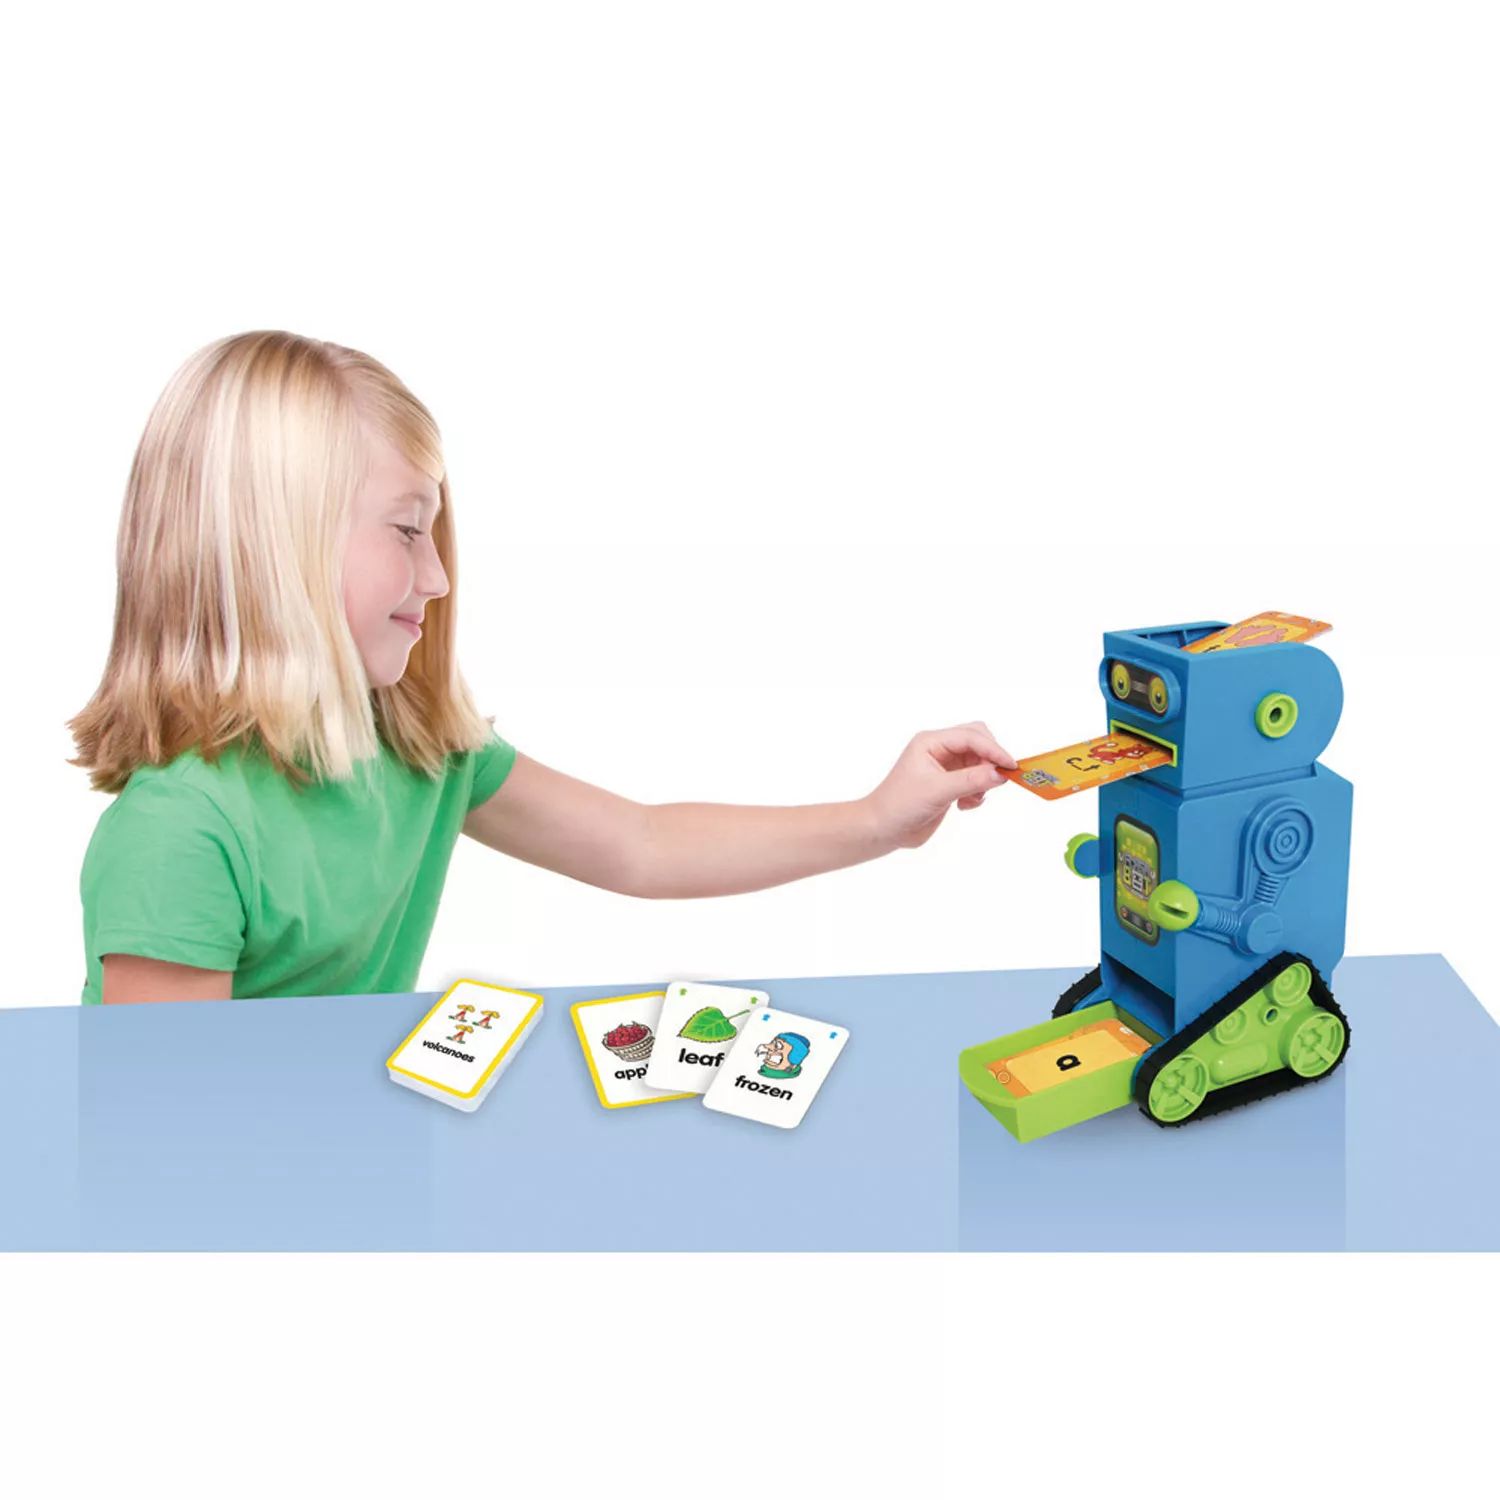 Робот с флэш-картой для младшего обучения Flashbot Junior Learning machine learning с нуля до junior